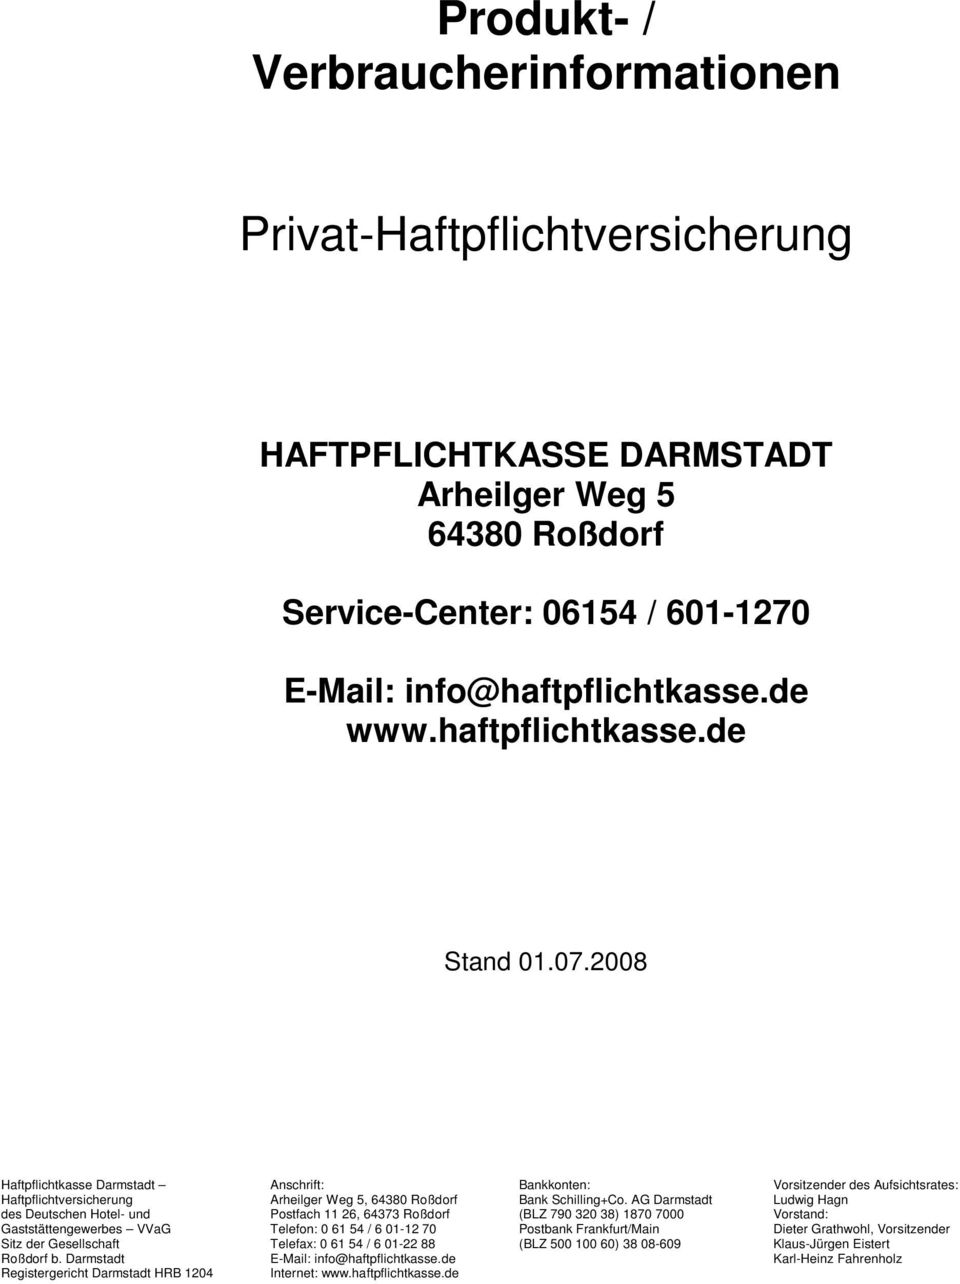 AG Darmstadt Ludwig Hagn des Deutschen Hotel- und Postfach 11 26, 64373 Roßdorf (BLZ 790 320 38) 1870 7000 Vorstand: Gaststättengewerbes VVaG Telefon: 0 61 54 / 6 01-12 70 Postbank Frankfurt/Main